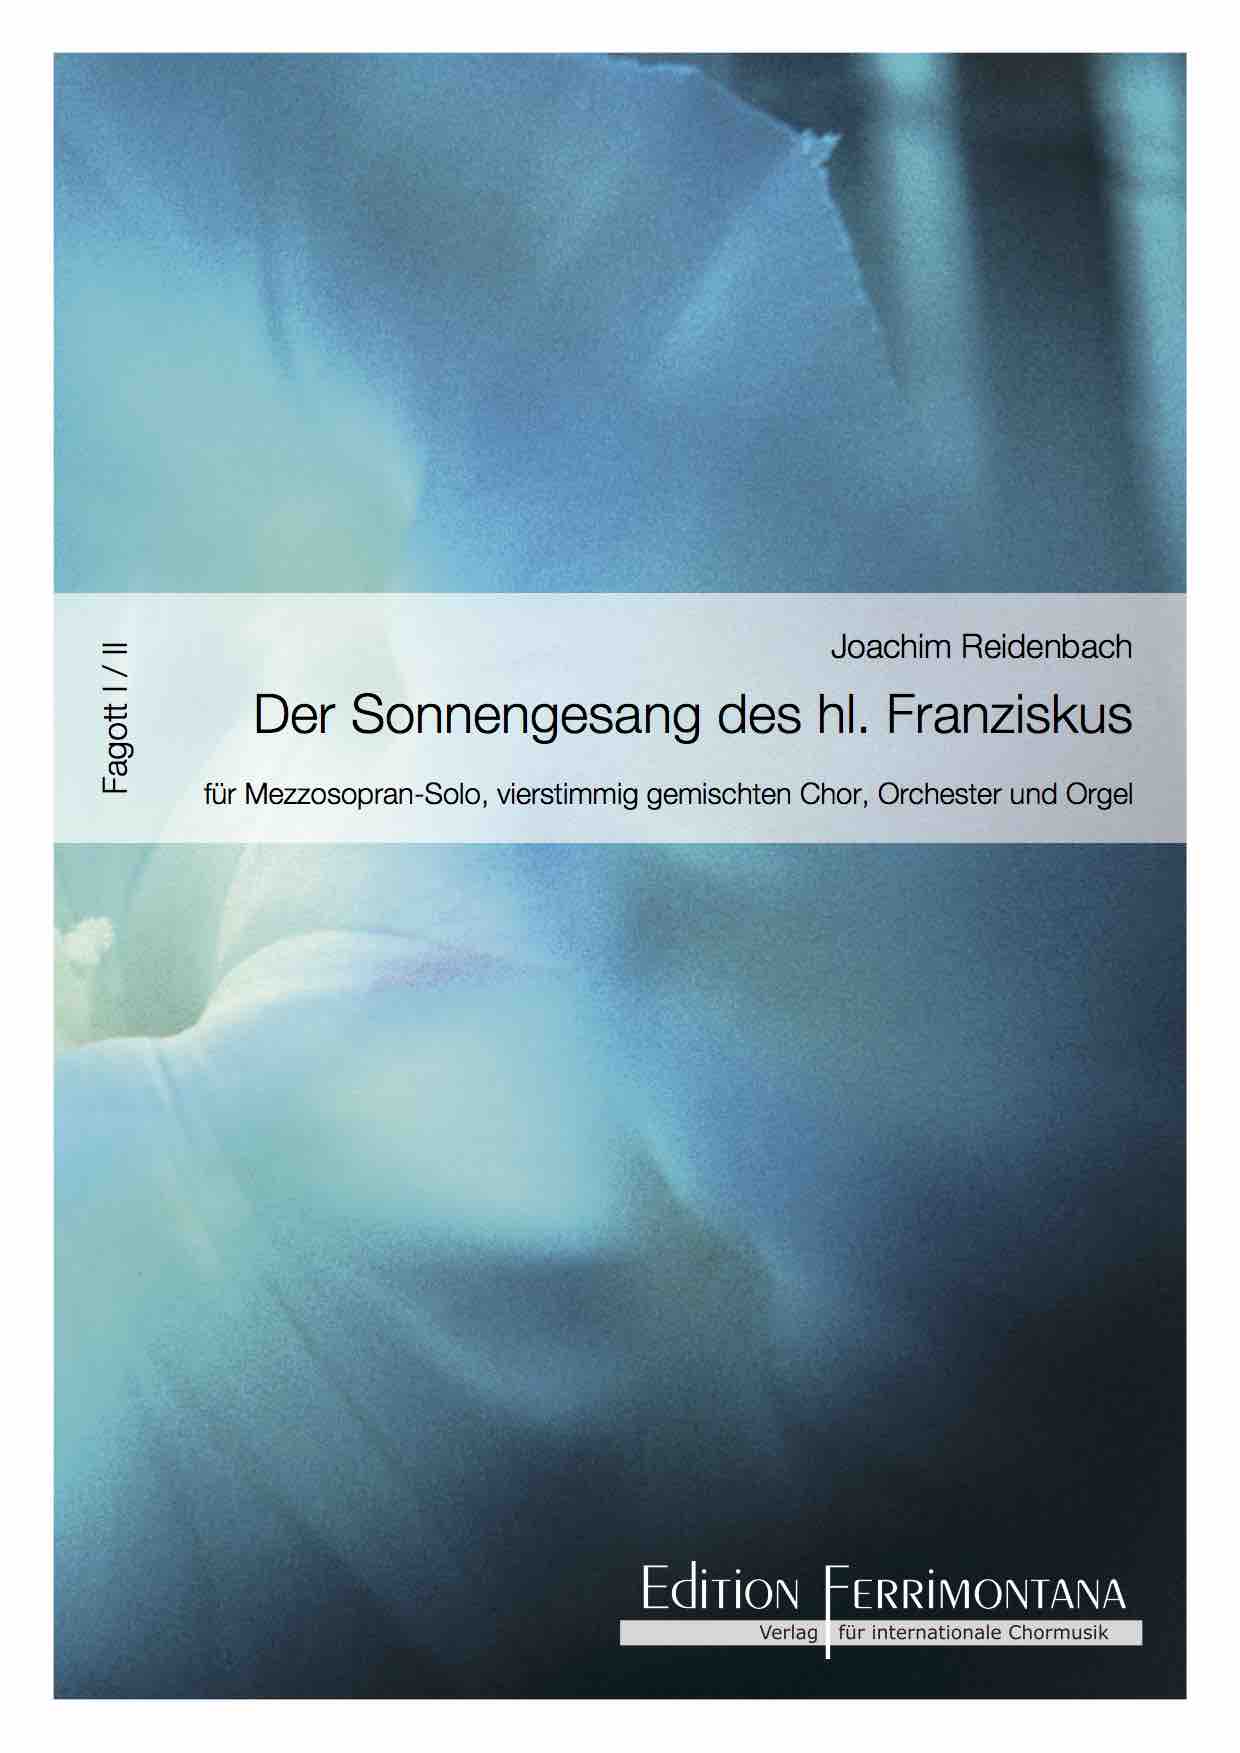 Reidenbach: Der Sonnengesang des heiligen Franziskus - Fagott I und II